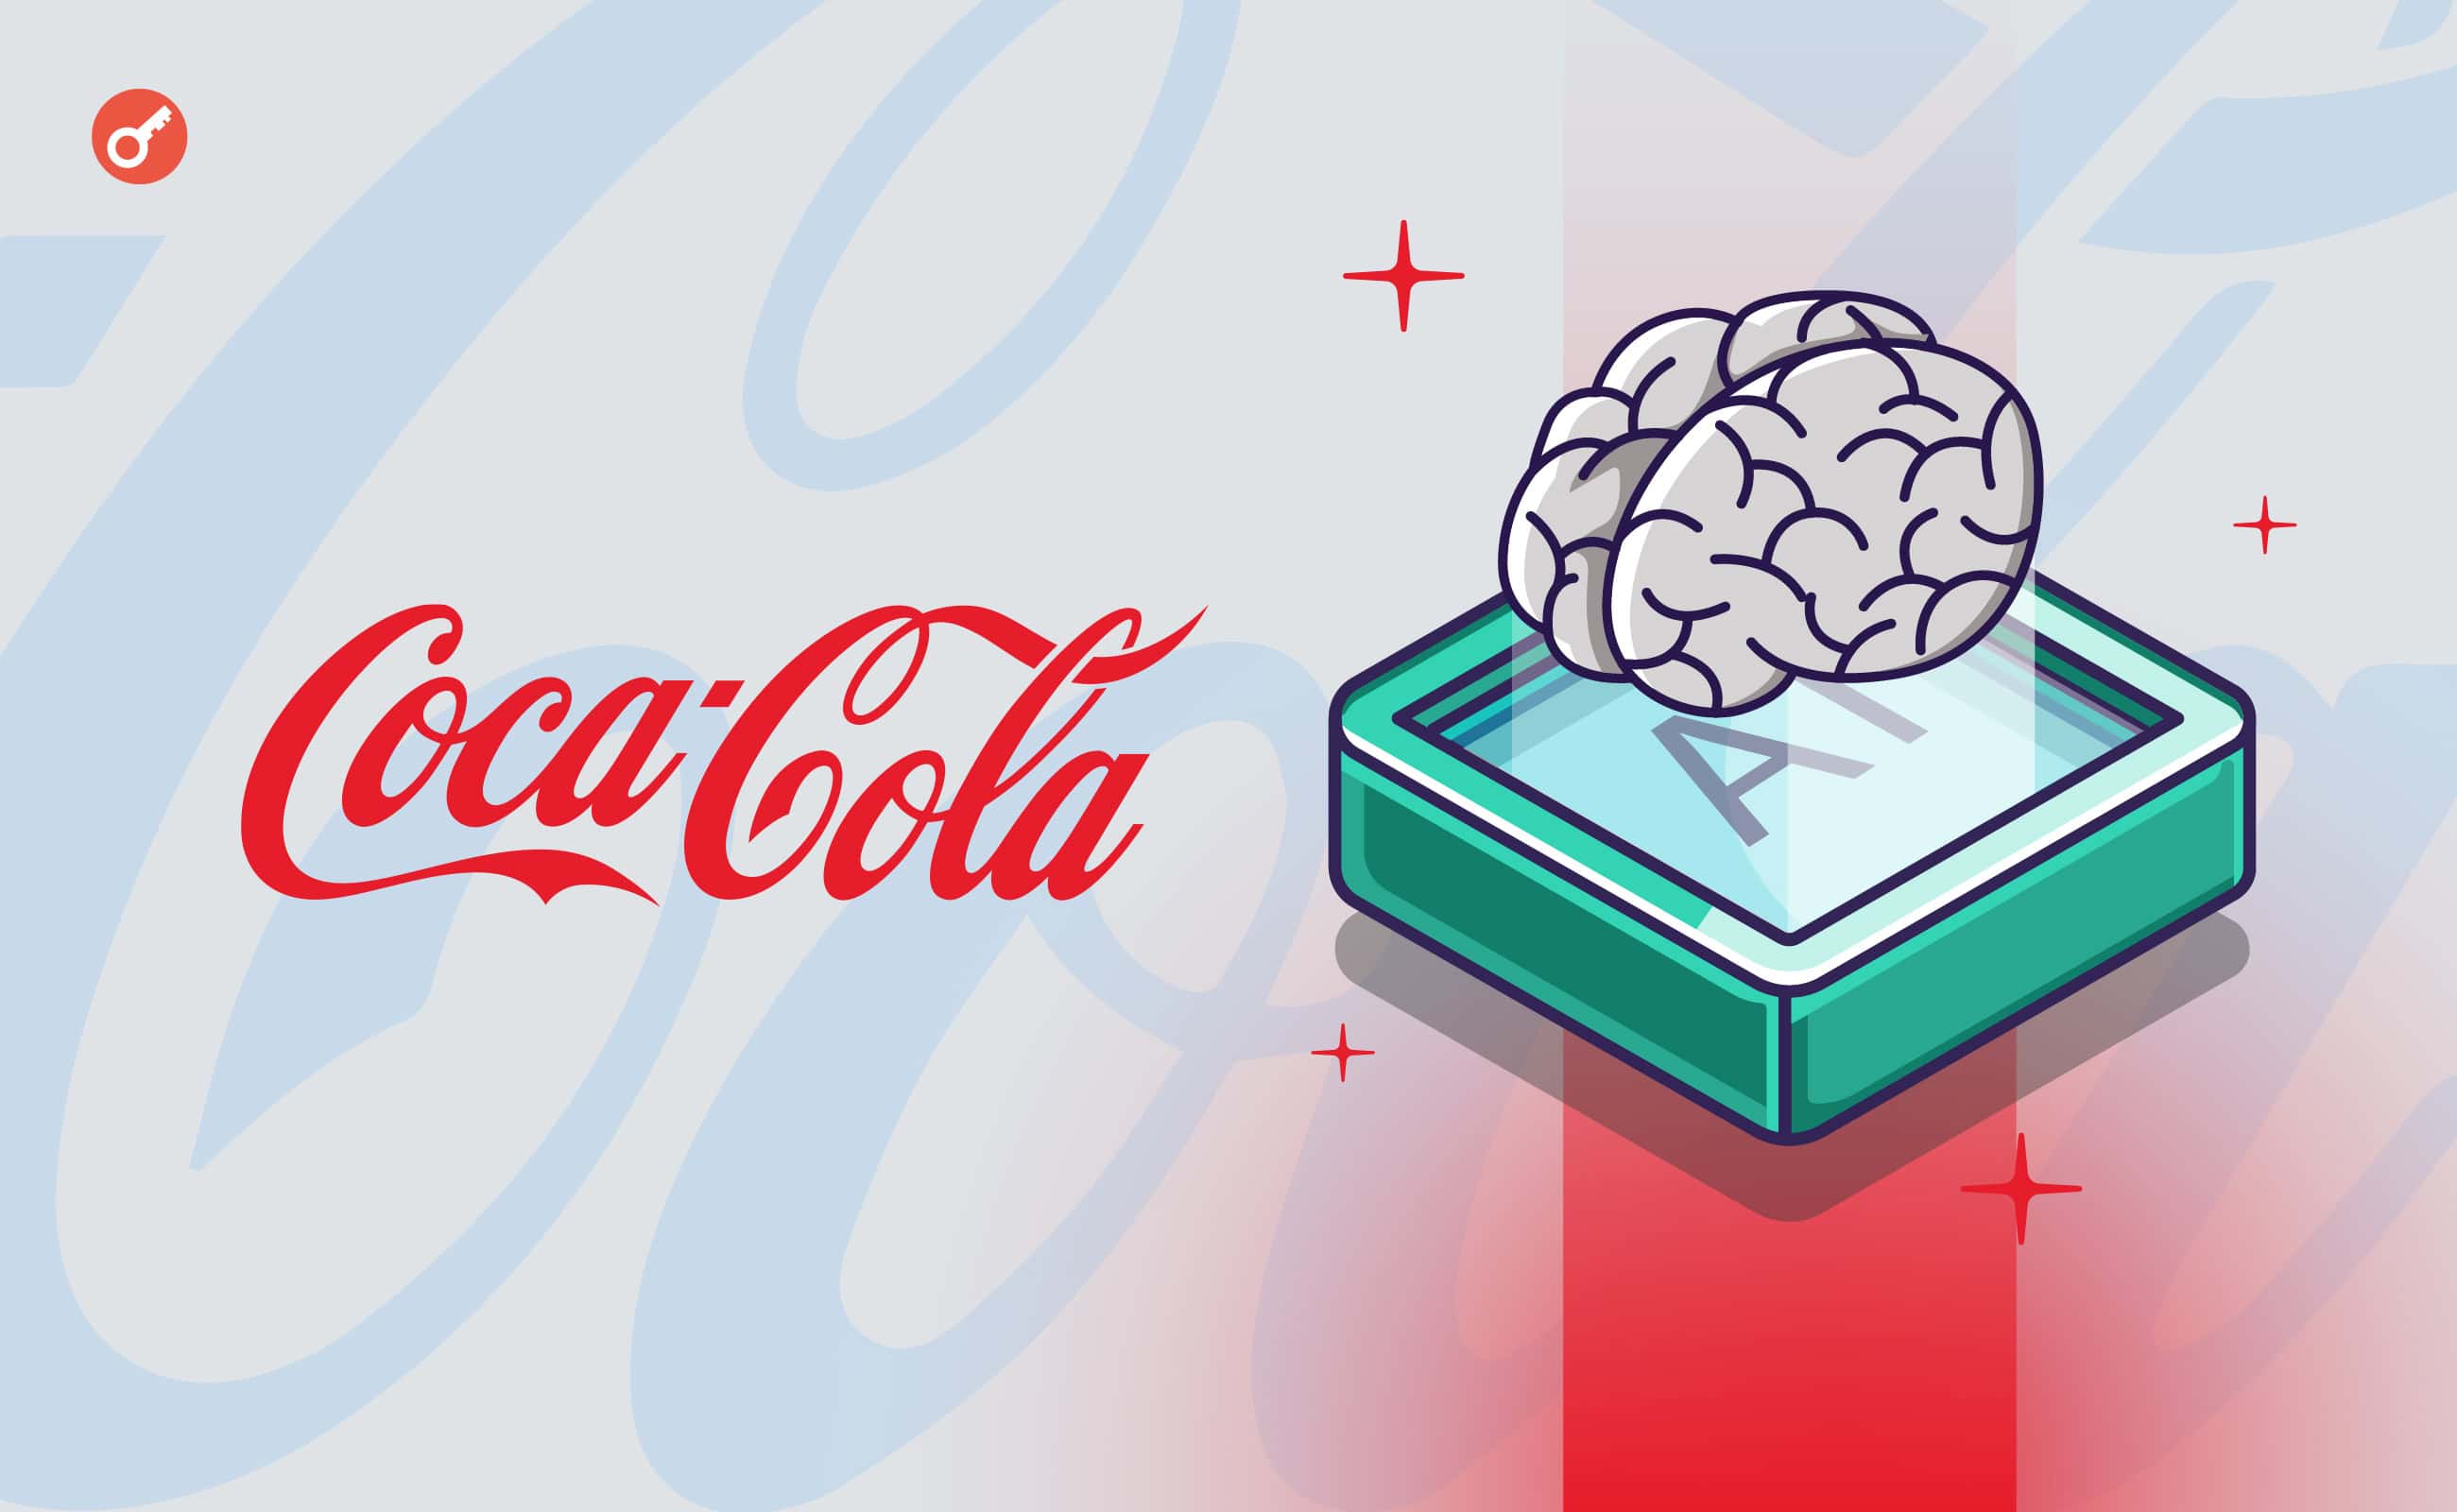 Coca-Cola zainwestuje 1,1 mld USD w sferę sztucznej inteligencji w ramach partnerstwa z Microsoftem. Główny kolaż wiadomości.